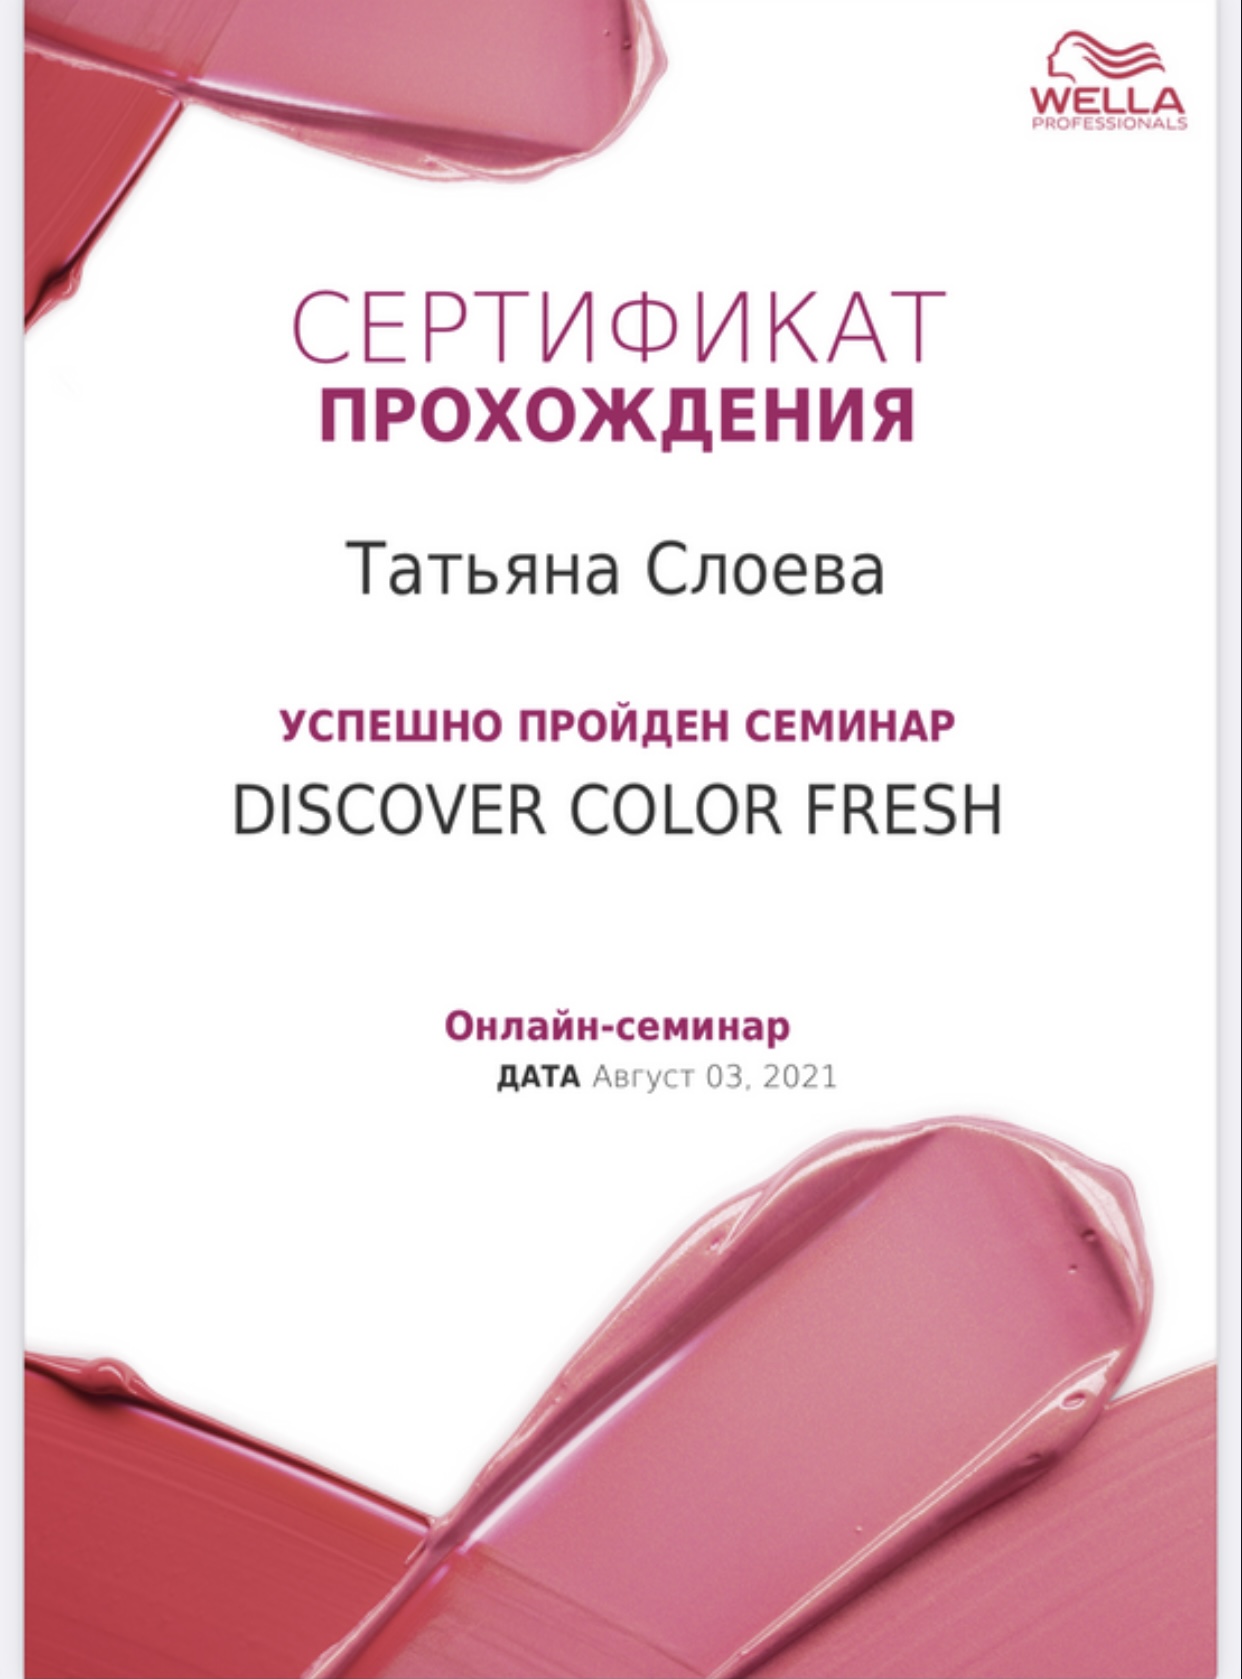 03.08.2021, Онлайн-семинар Discover Color Fresh